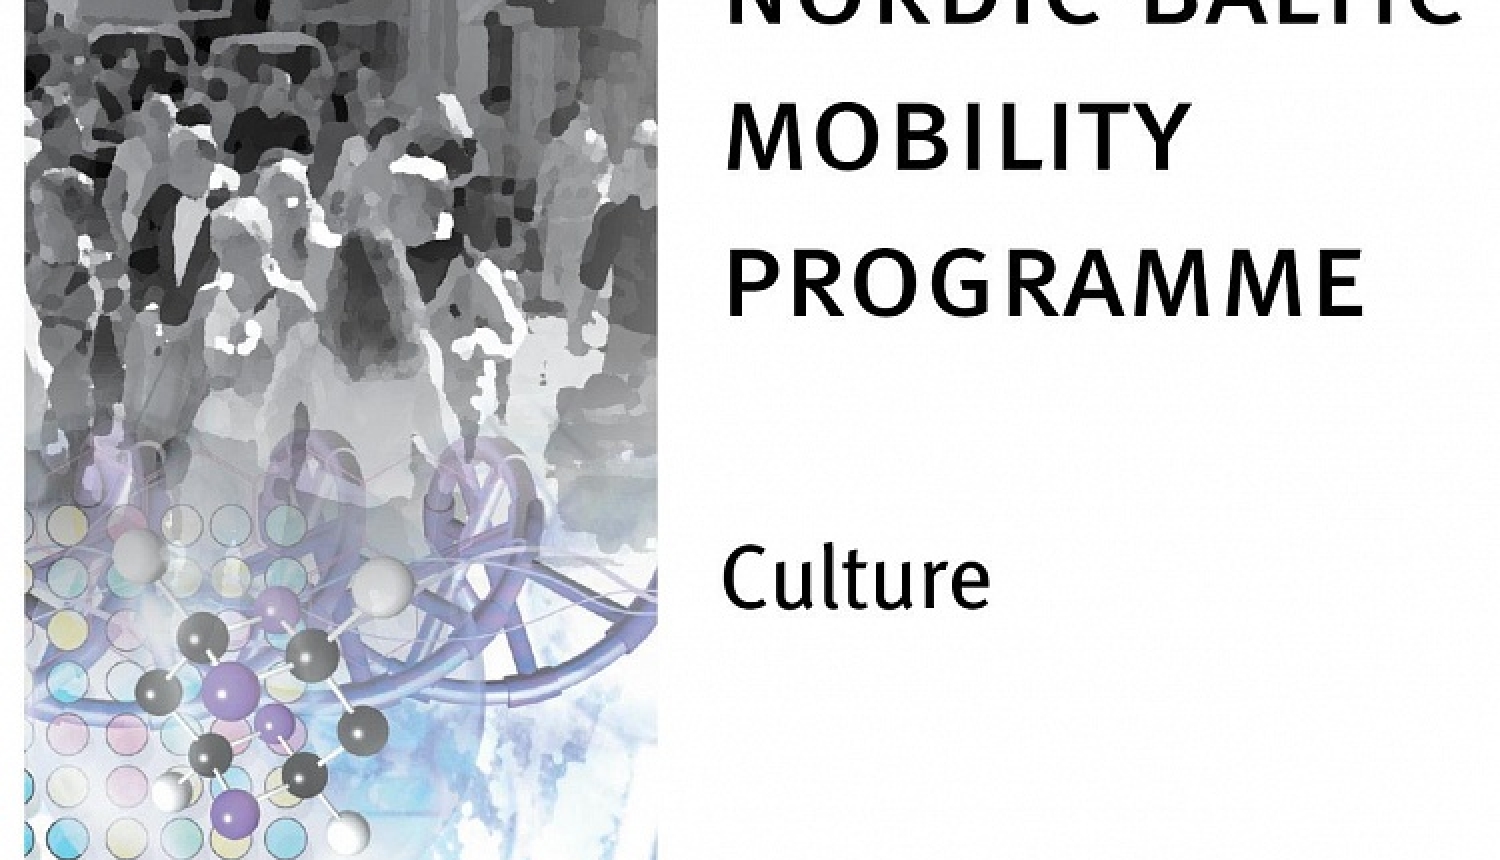 Ziemeļvalstu un Baltijas valstu mobilitātes programmas „Kultūra” ietvaros ir izsludināts konkurss īstermiņa sadarbības tīklu veidošanai